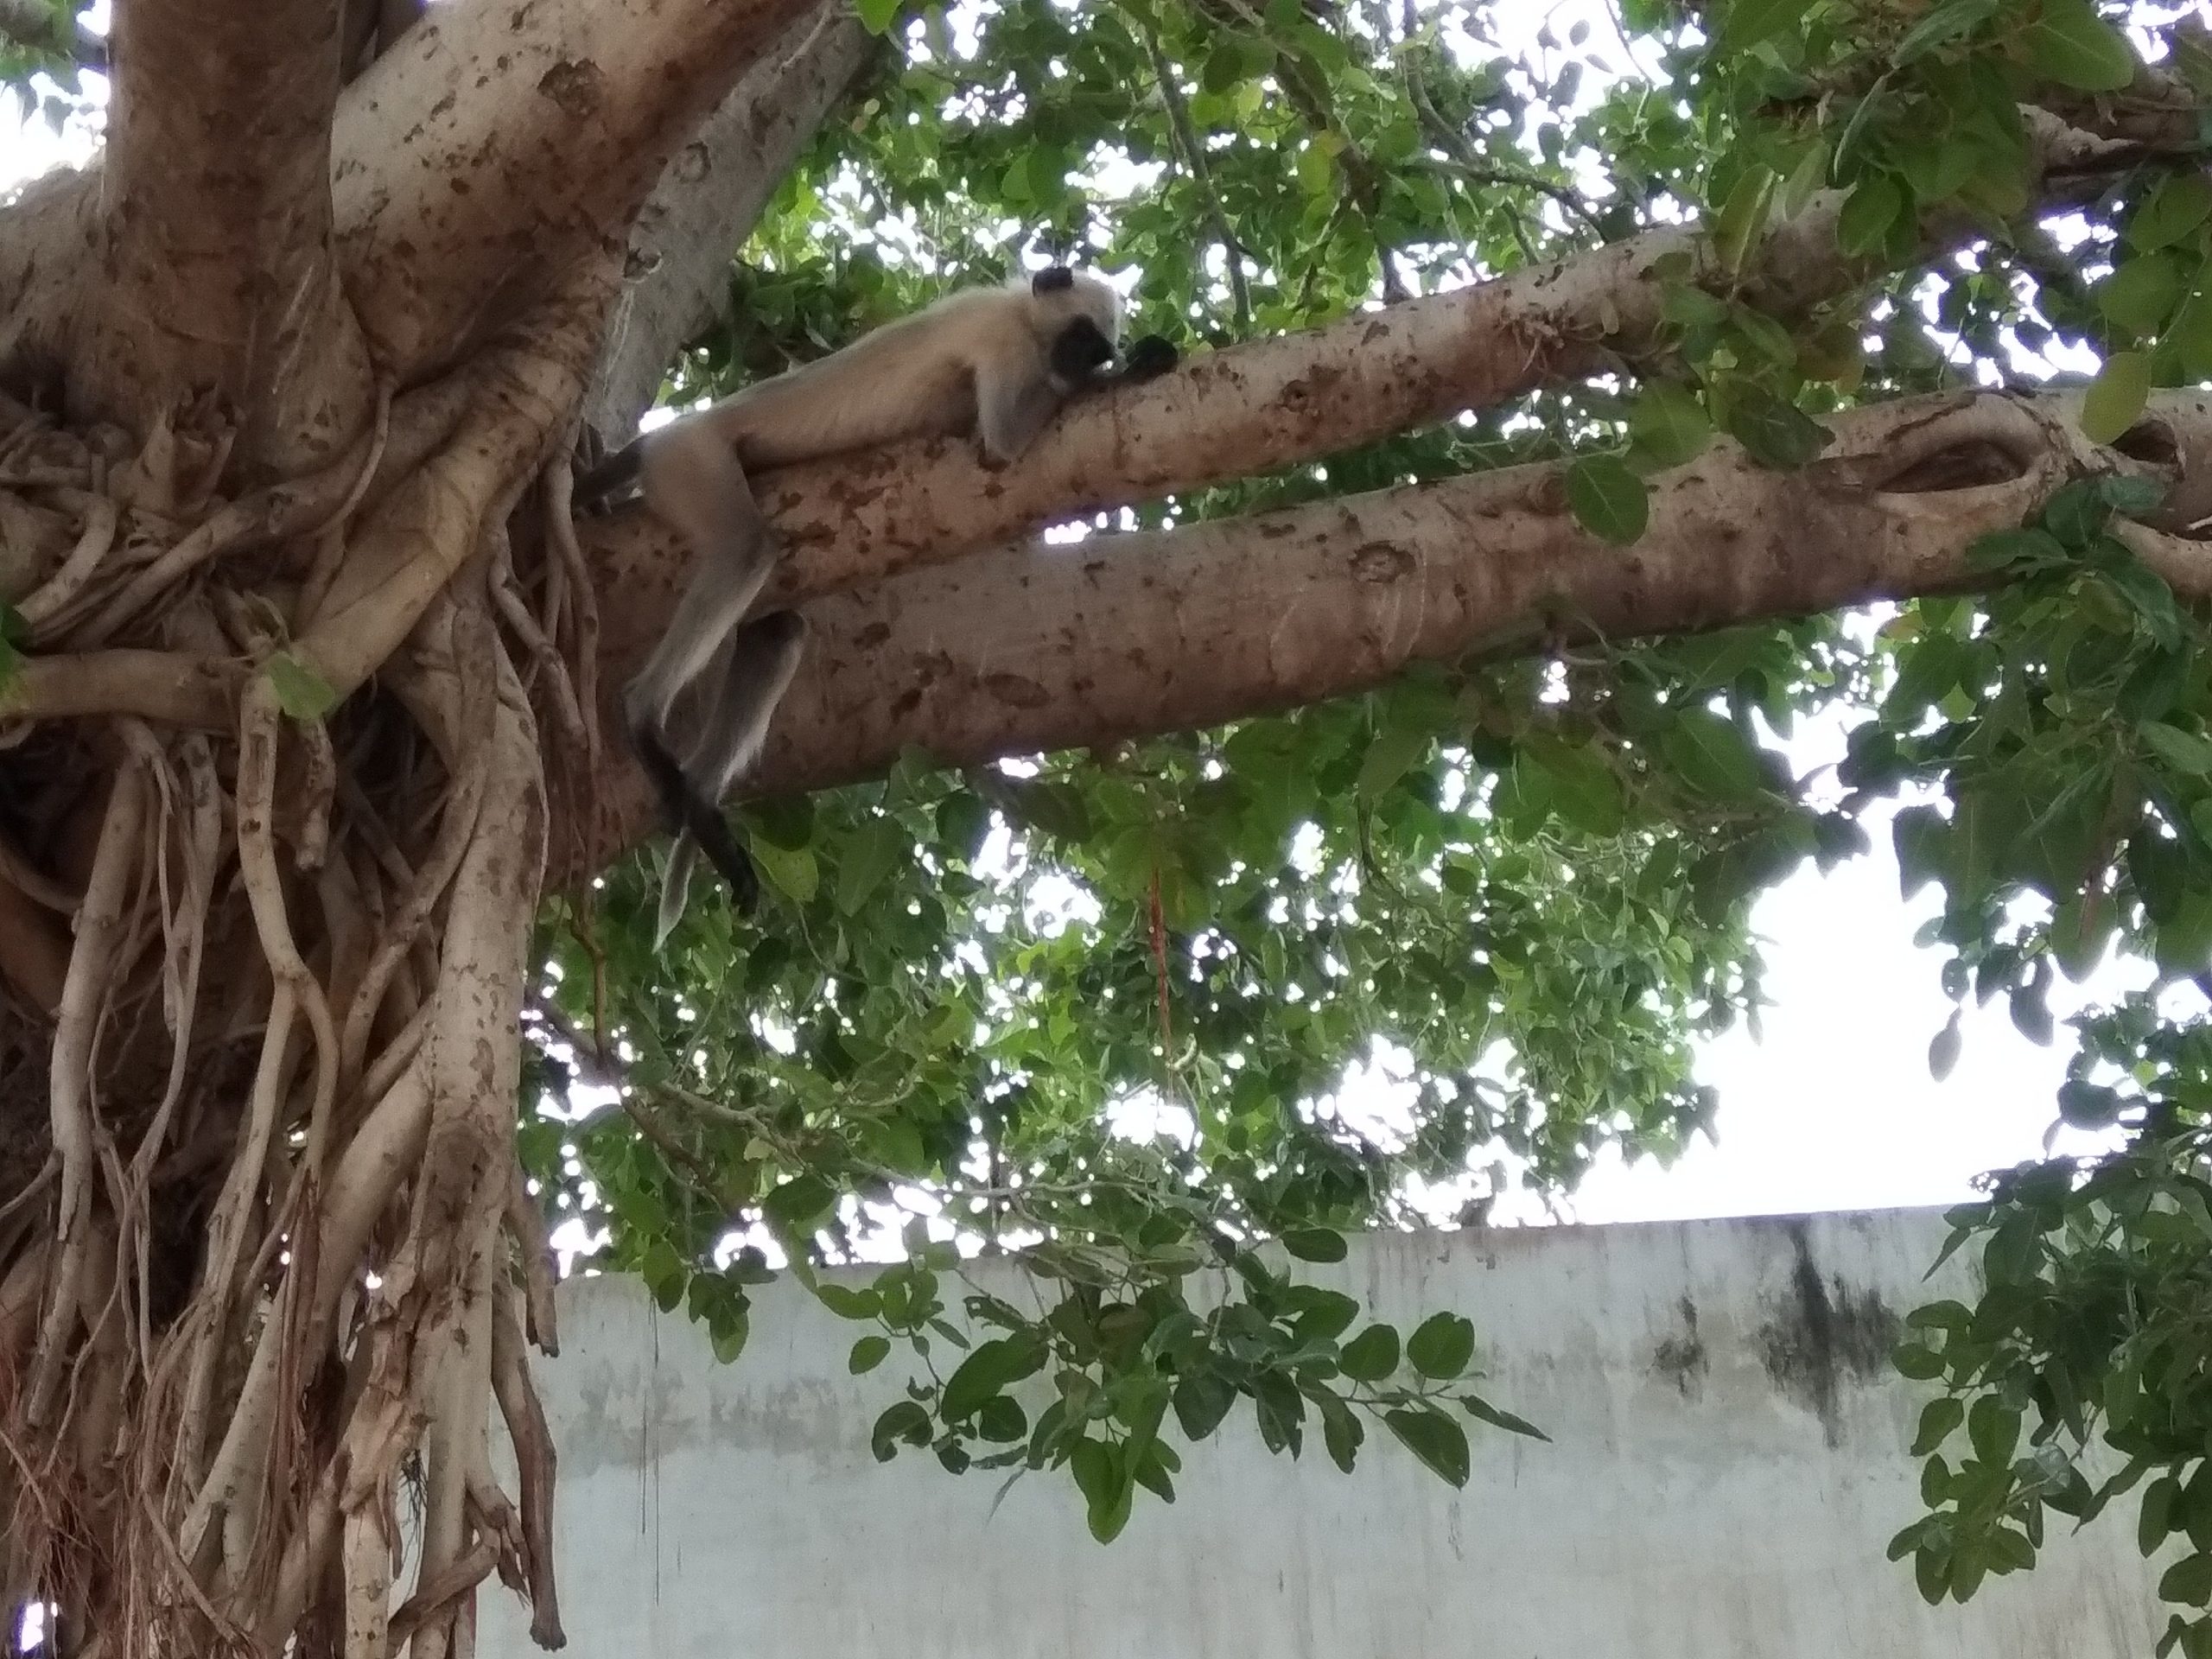 Baboon sleeping on tree